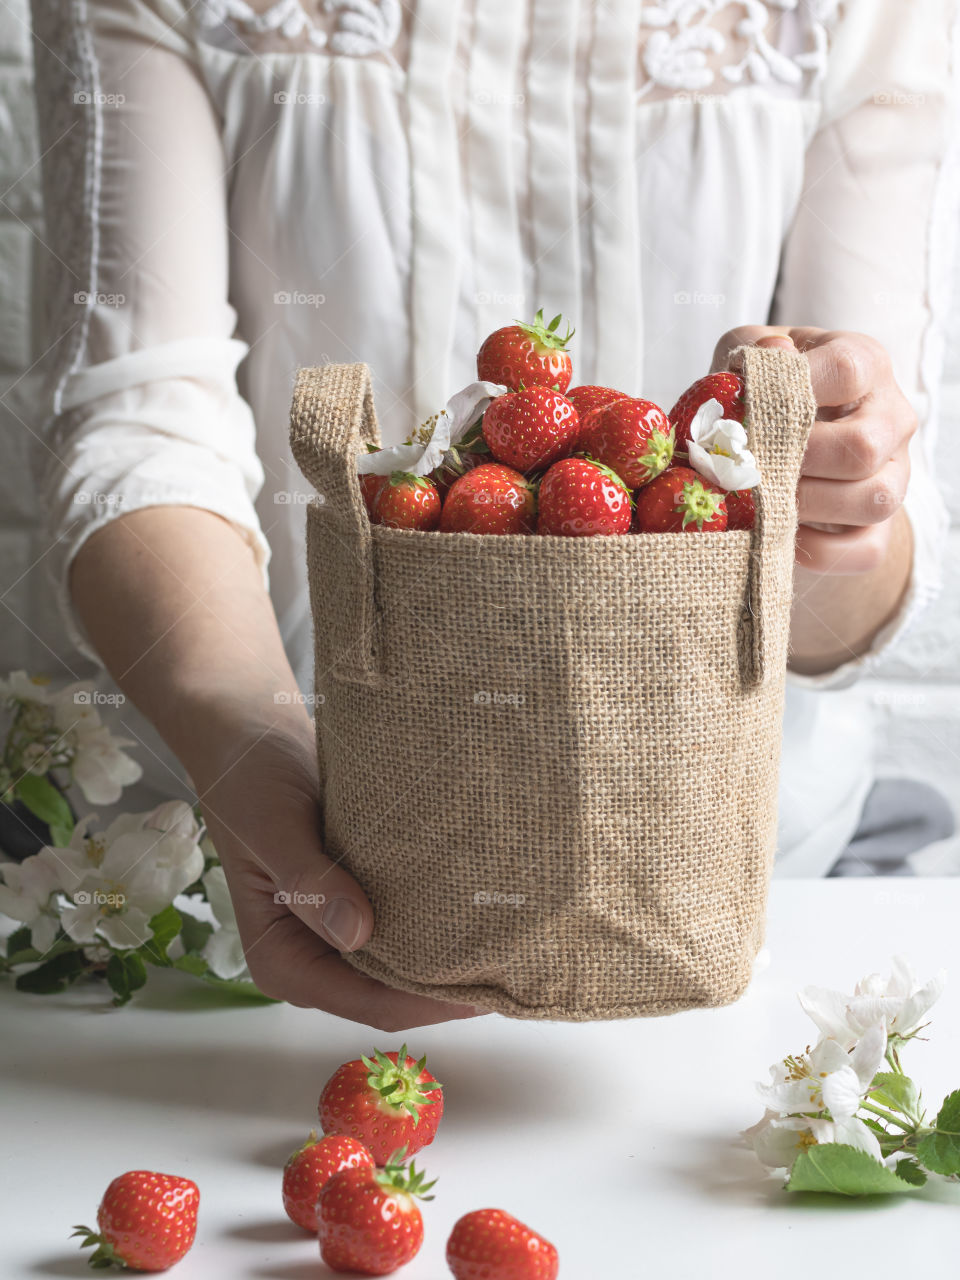 Holding a jute bag full of ripe fresh strawberries 